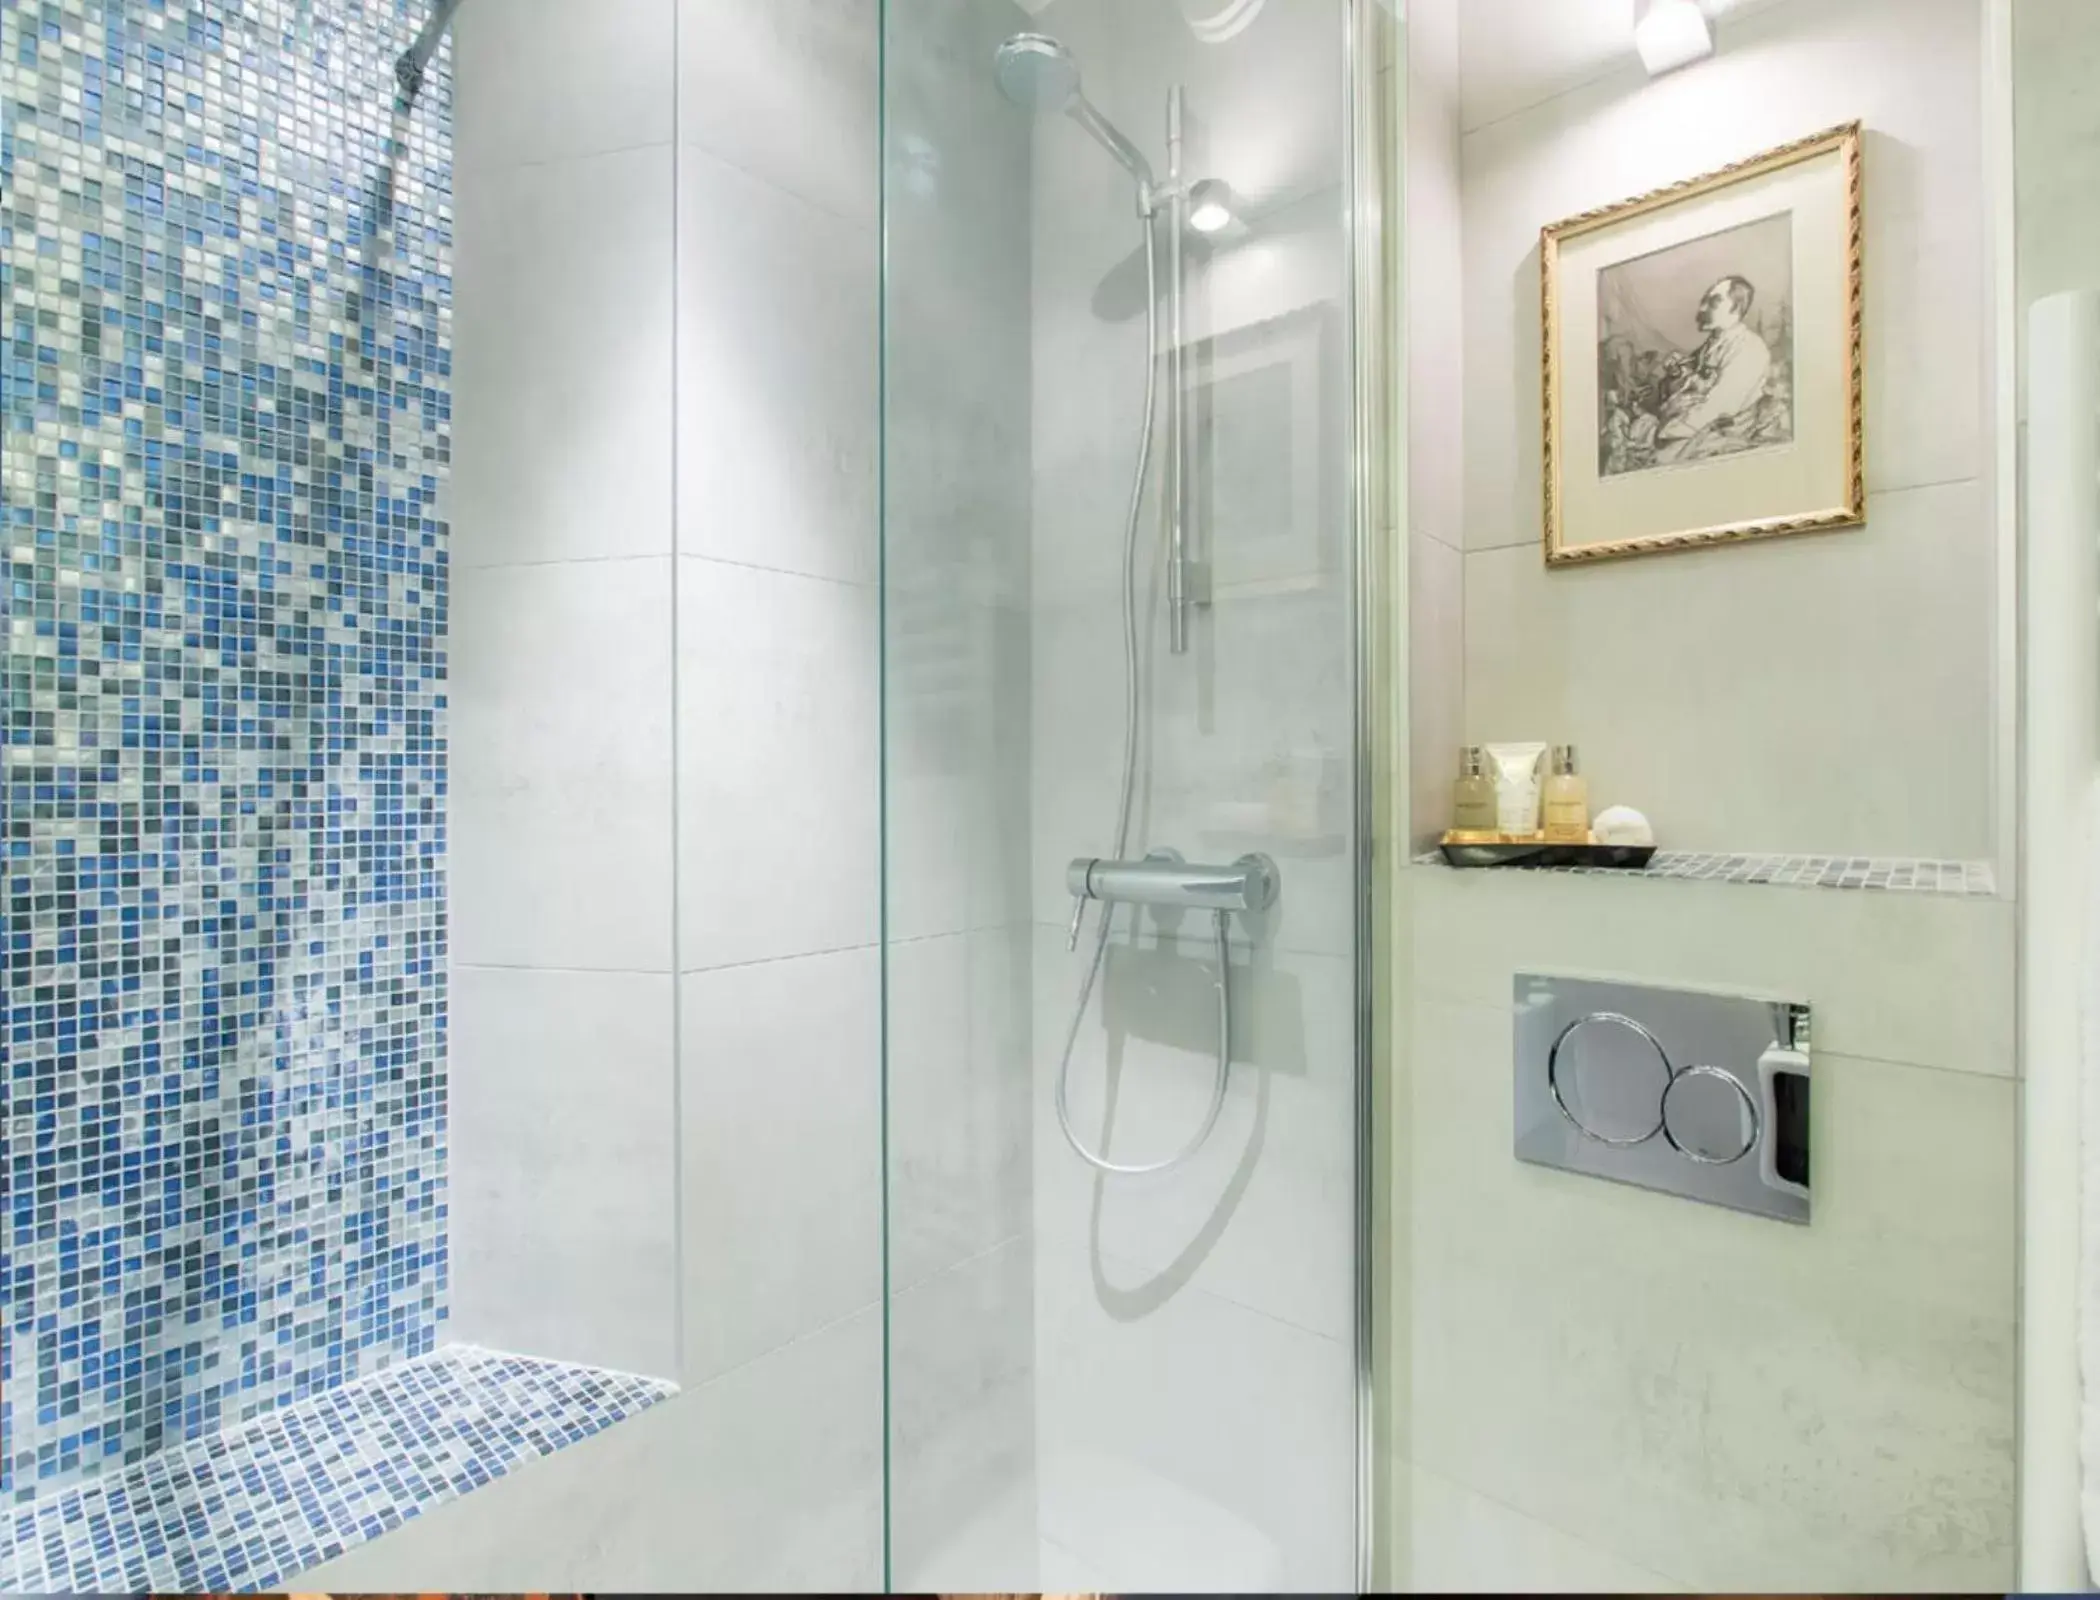 Shower, Bathroom in R. Kipling by Happyculture